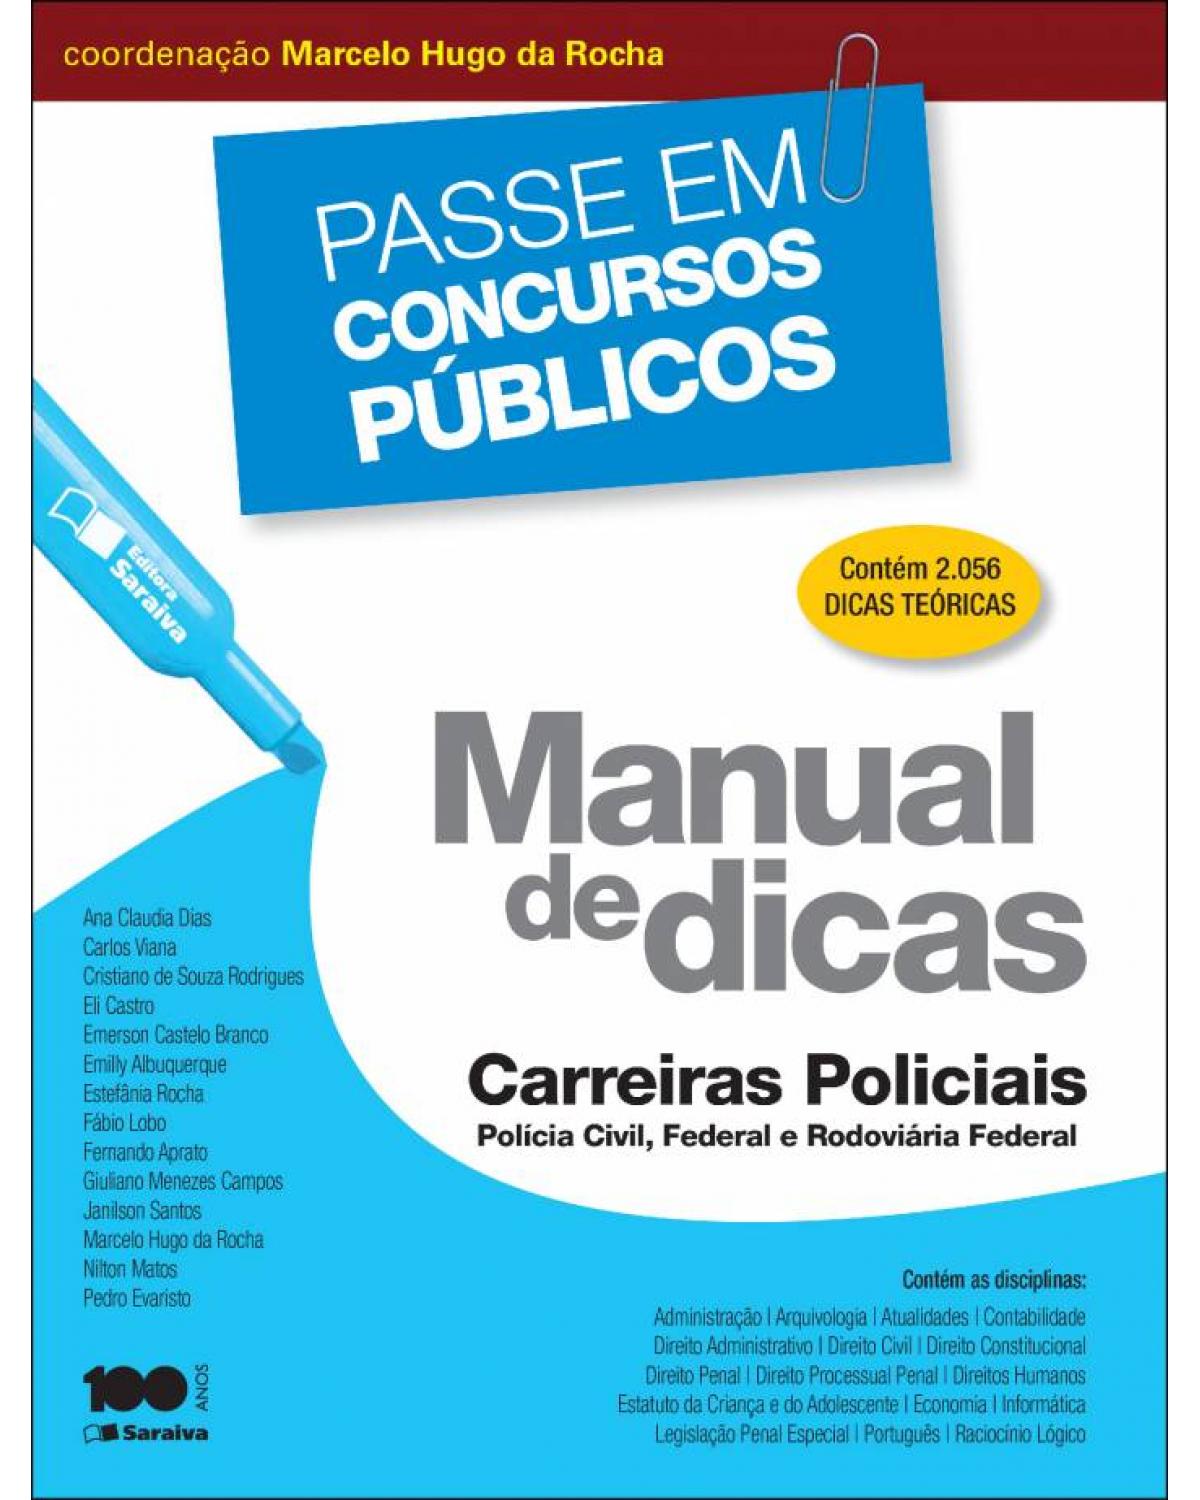 Manual de dicas - carreiras policiais: Polícia Civil, Federal e Rodoviária Federal - 1ª Edição | 2014